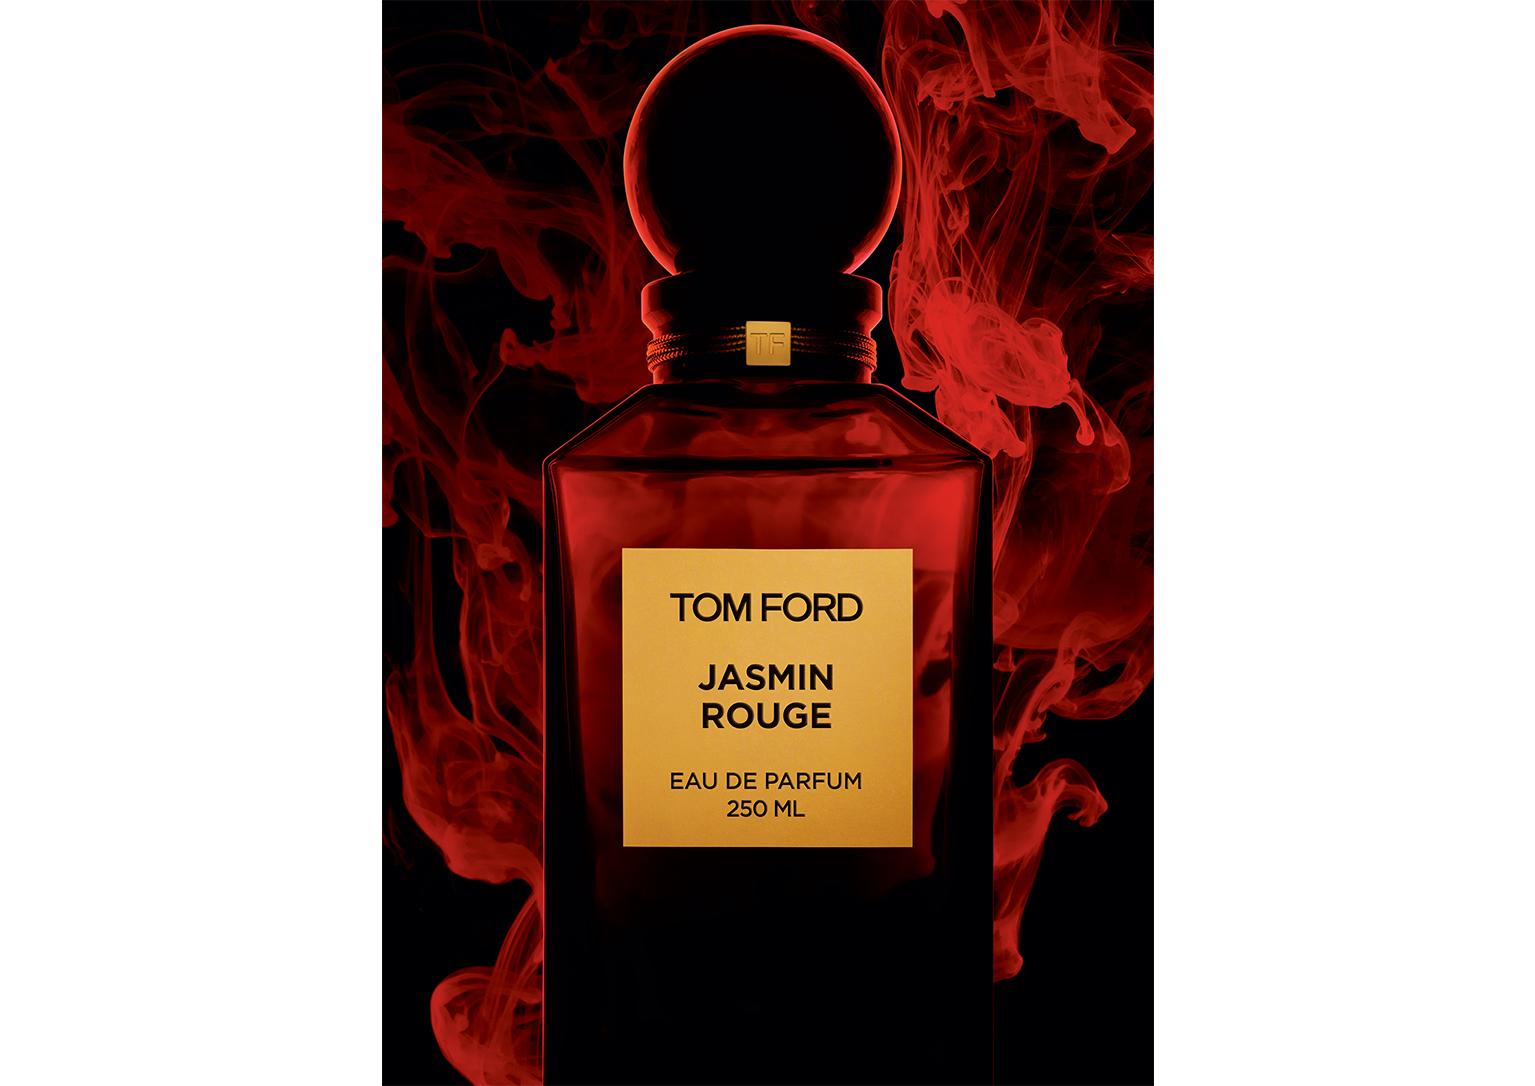 Tom Ford JASMIN ROUGE EAU DE PARFUM - Beauty 